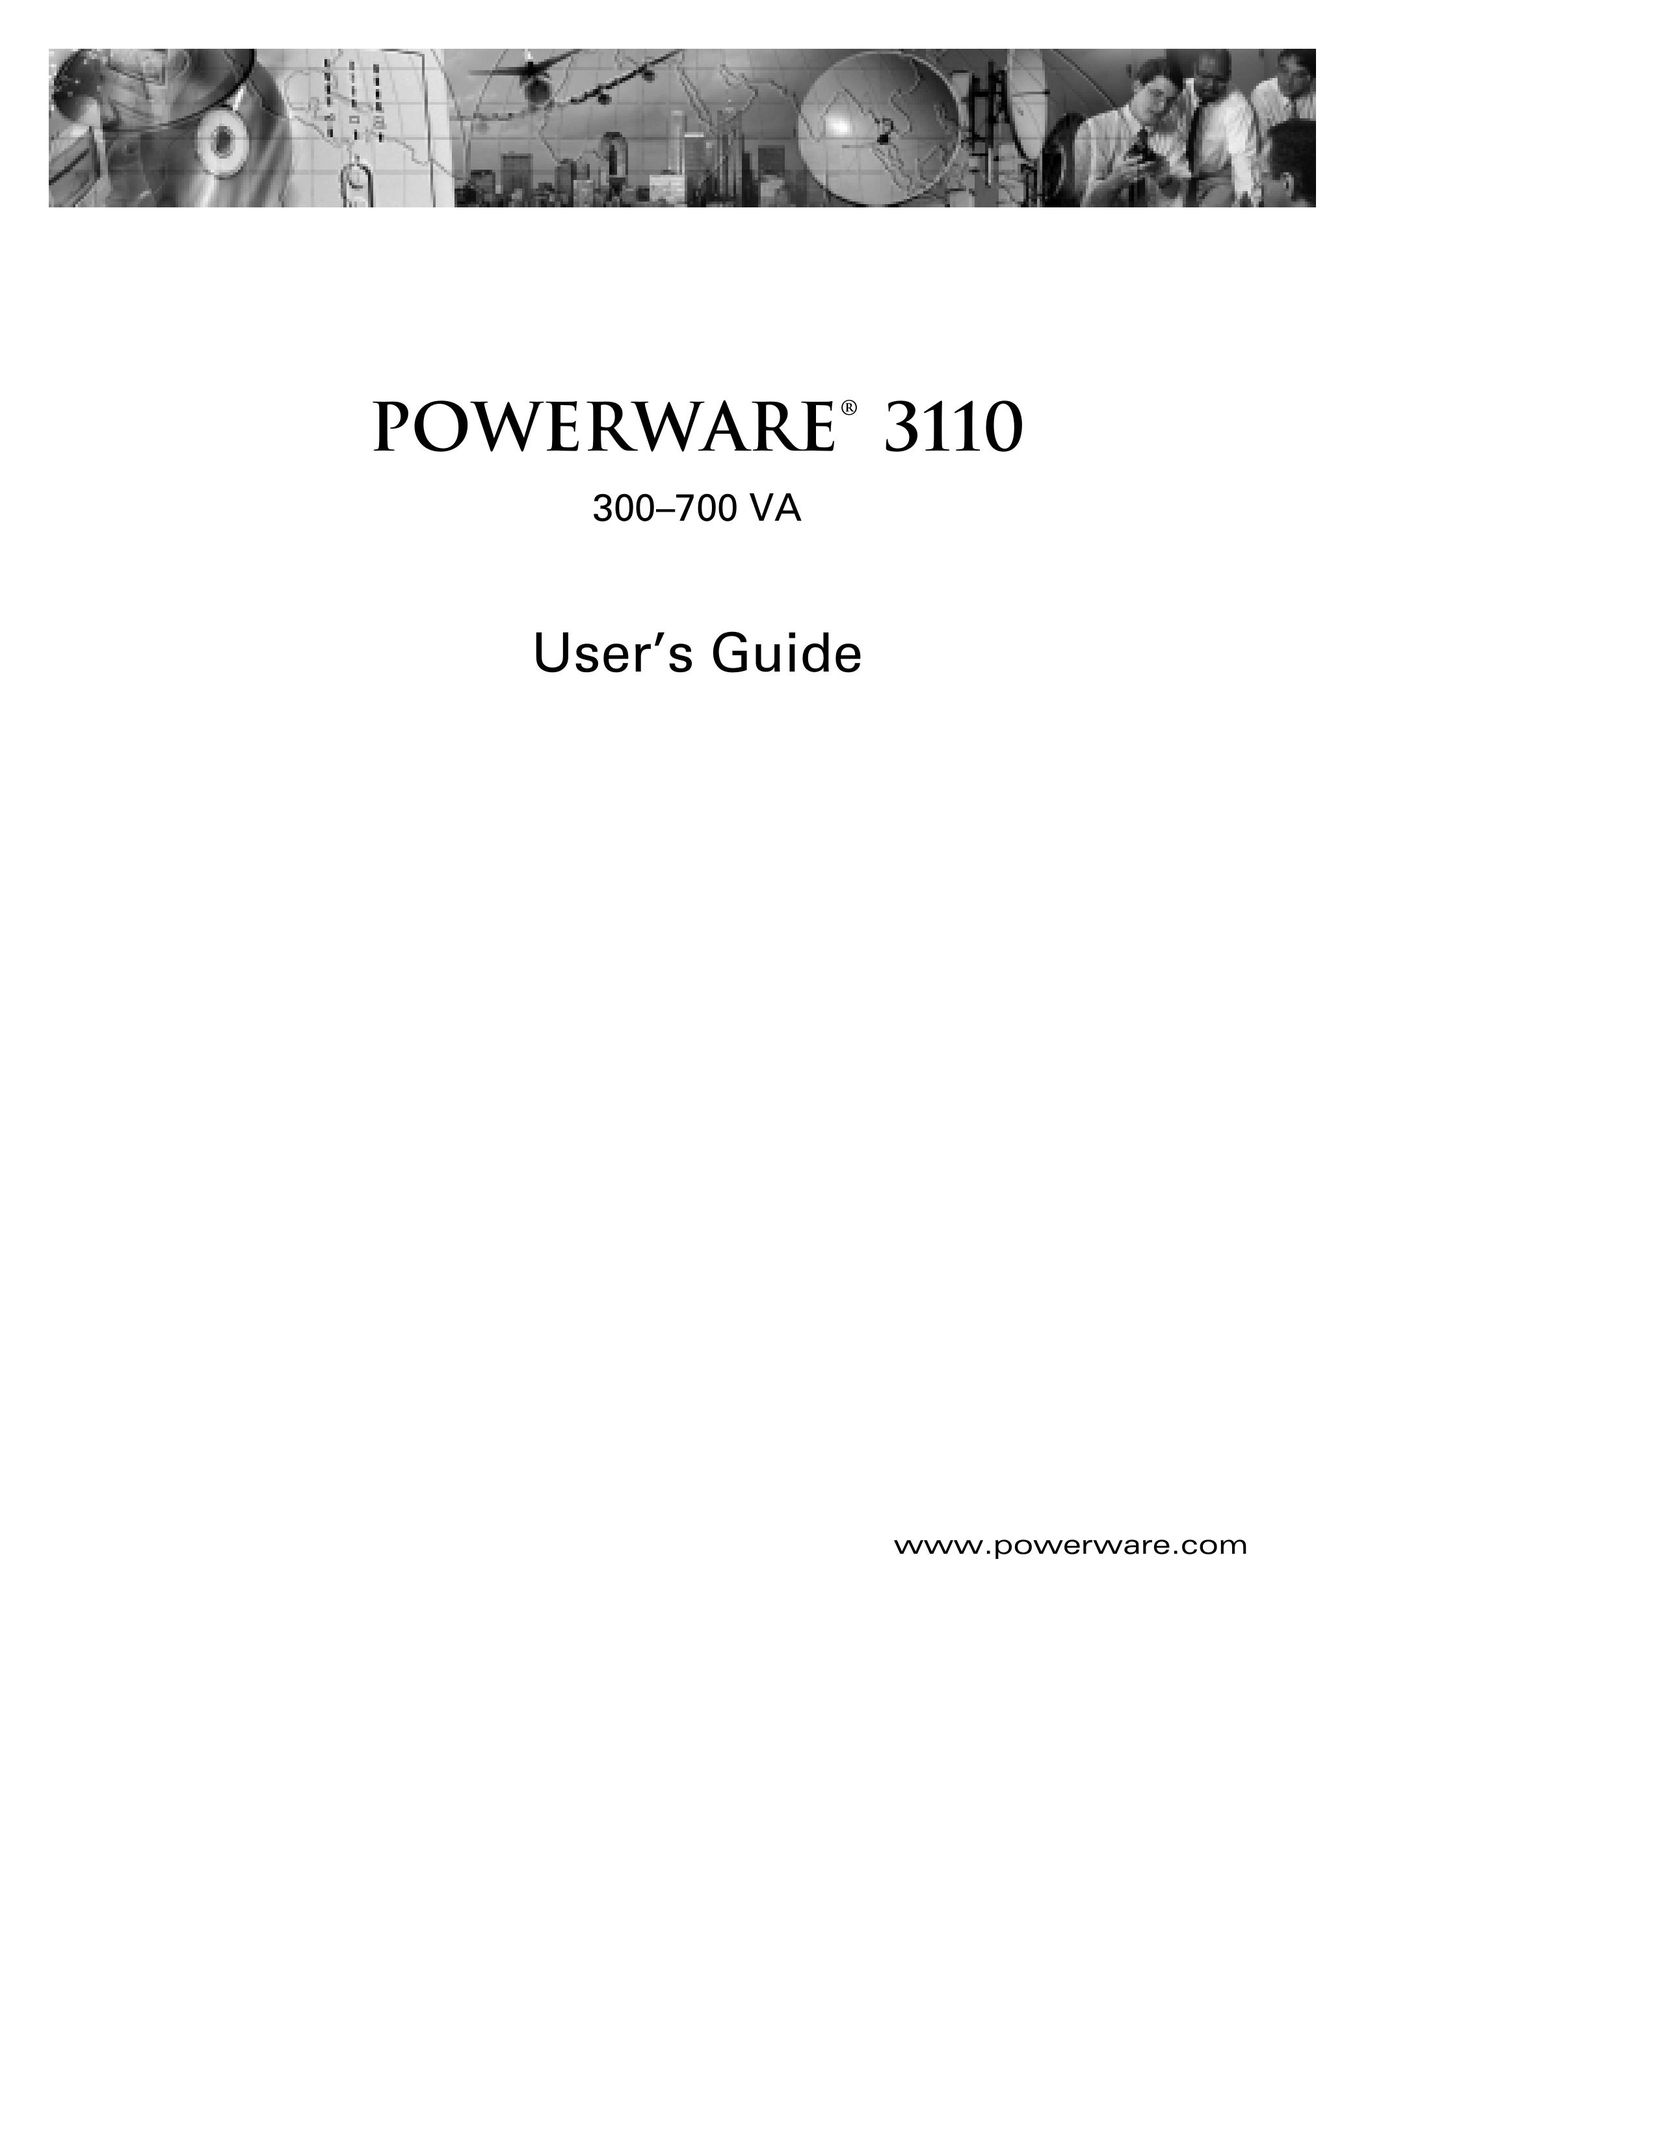 Powerware 3110 Network Card User Manual